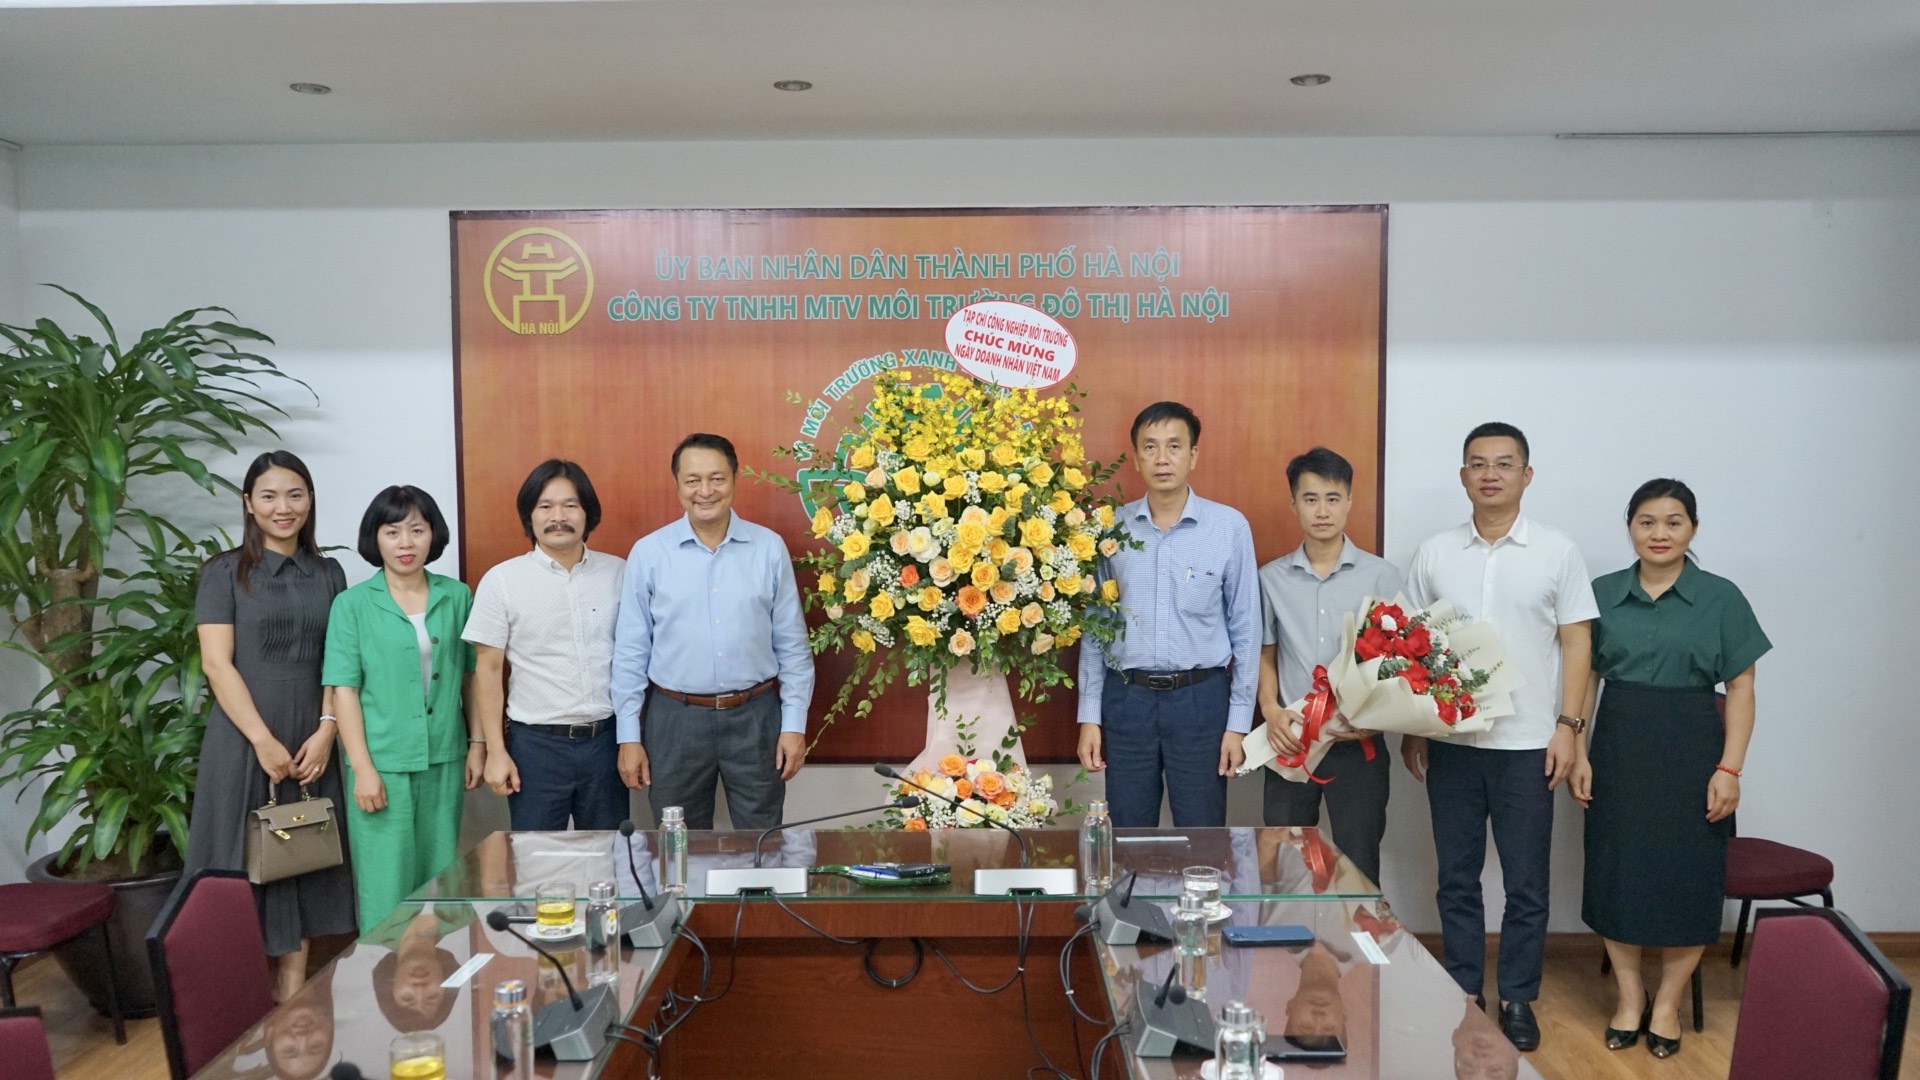 Tạp chí Công nghiệp môi trường kết nối doanh nghiệp, tặng quà cho người lao động tại Urenco Hà Nội